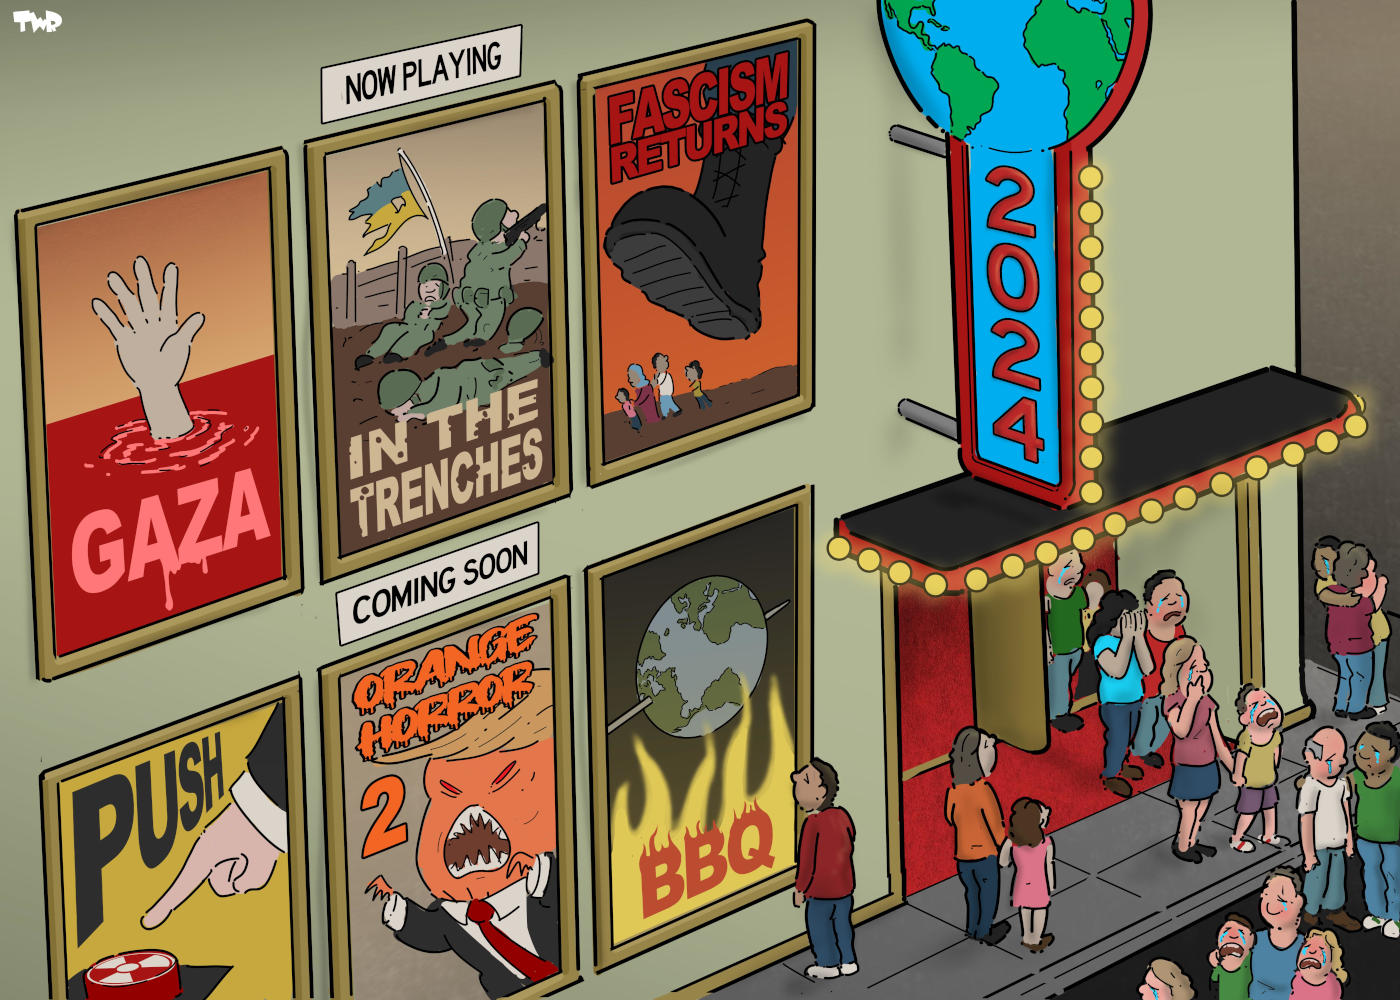 Die Karikatur "World Cinema" von dem politischen Karikaturist Tjeerd Royaards.